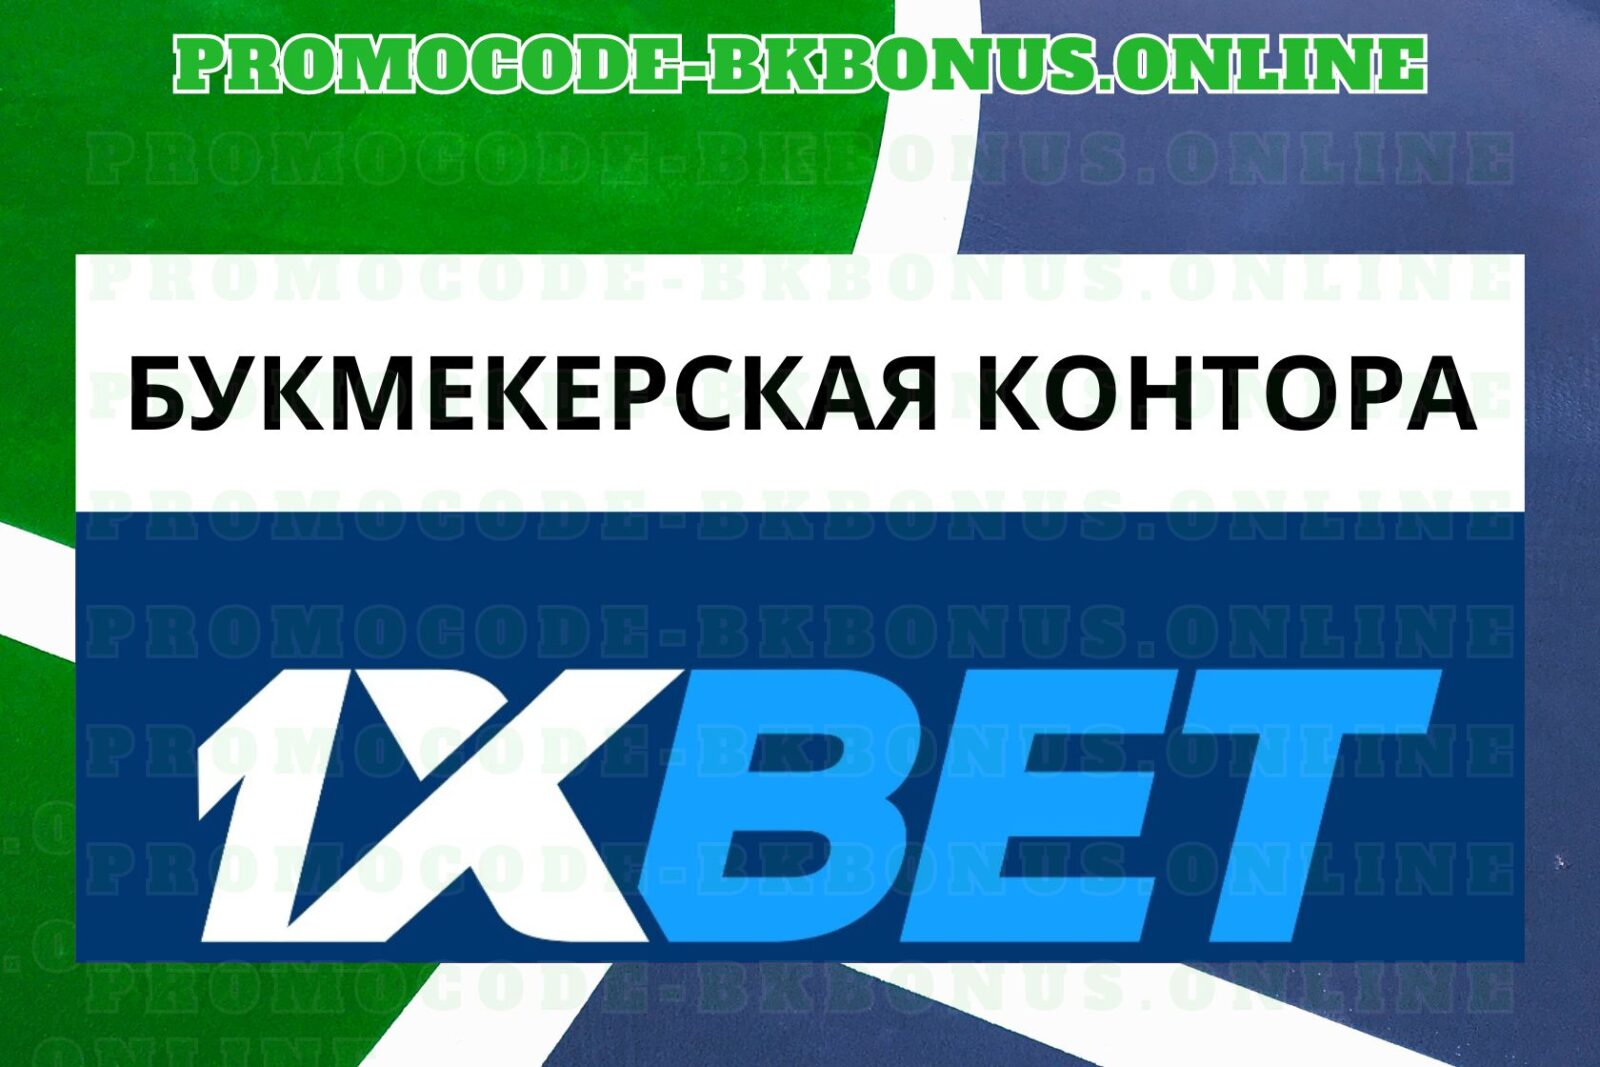 1xbet-fribet-bonus-bukmekerskaya-kontora-stavki-na-sport-kopiya-16-2